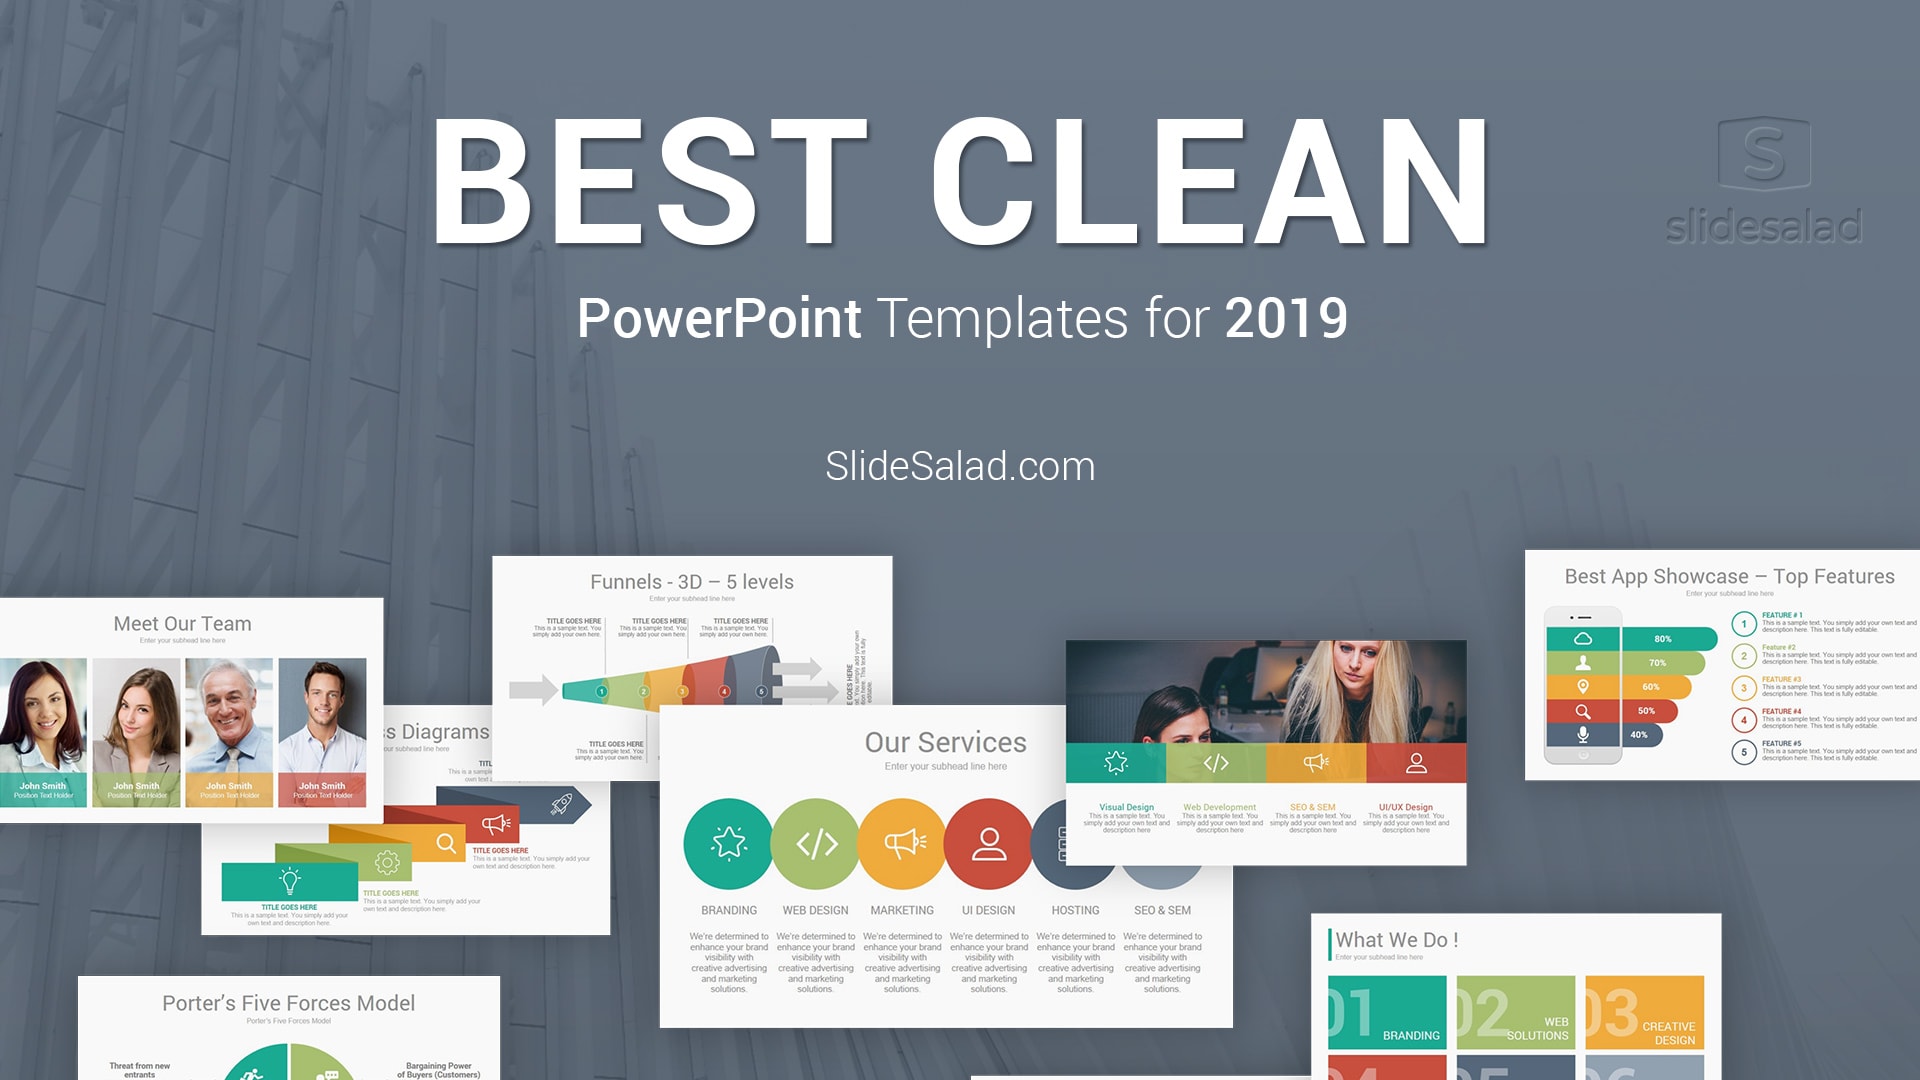 best powerpoint presentation pdf